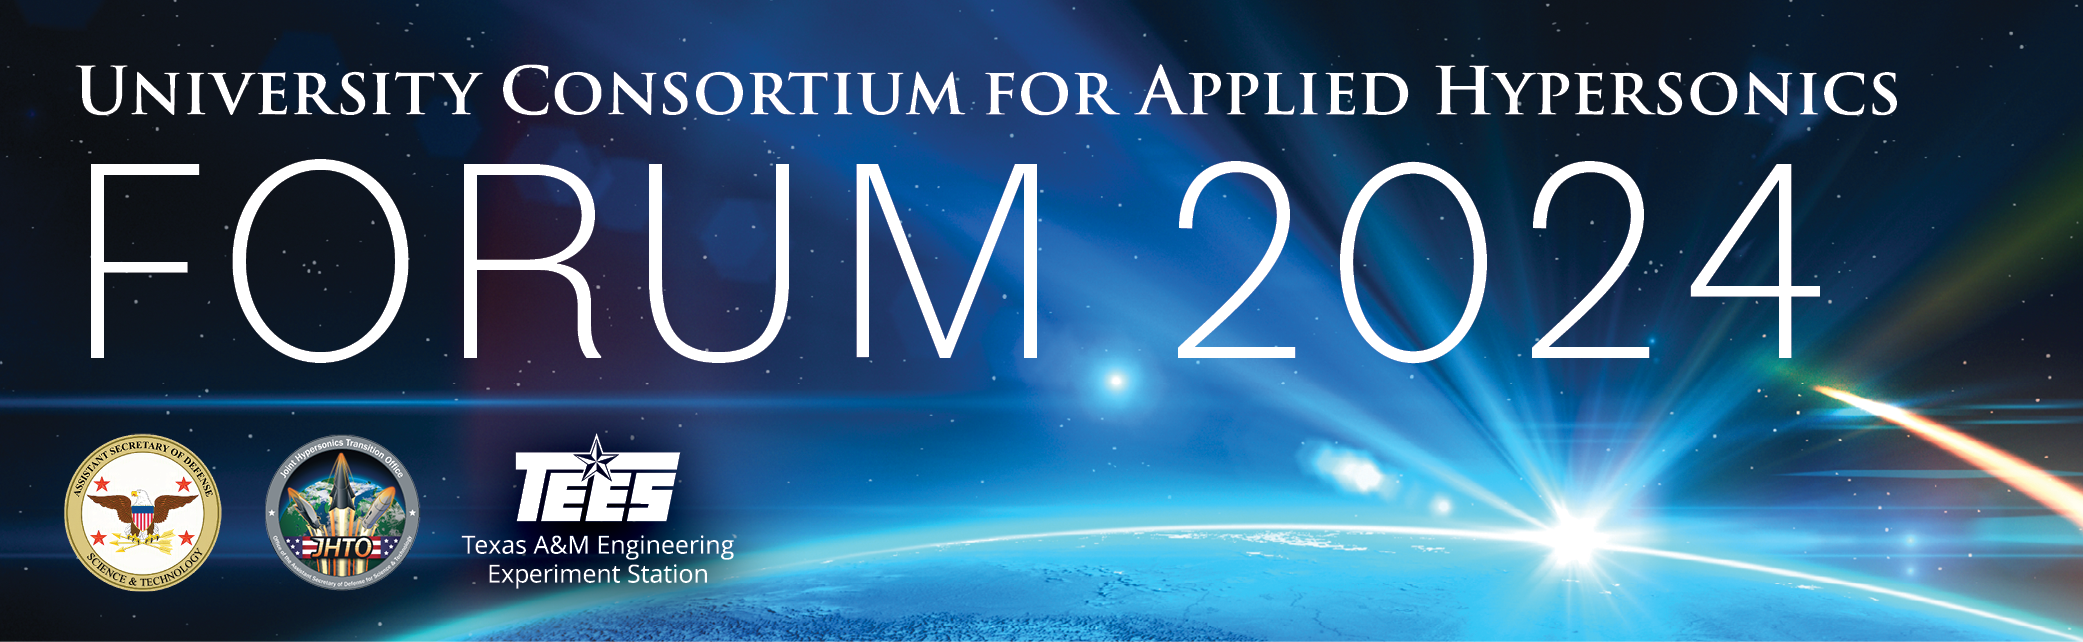 24 0247 UCAH Forum 2024 Header